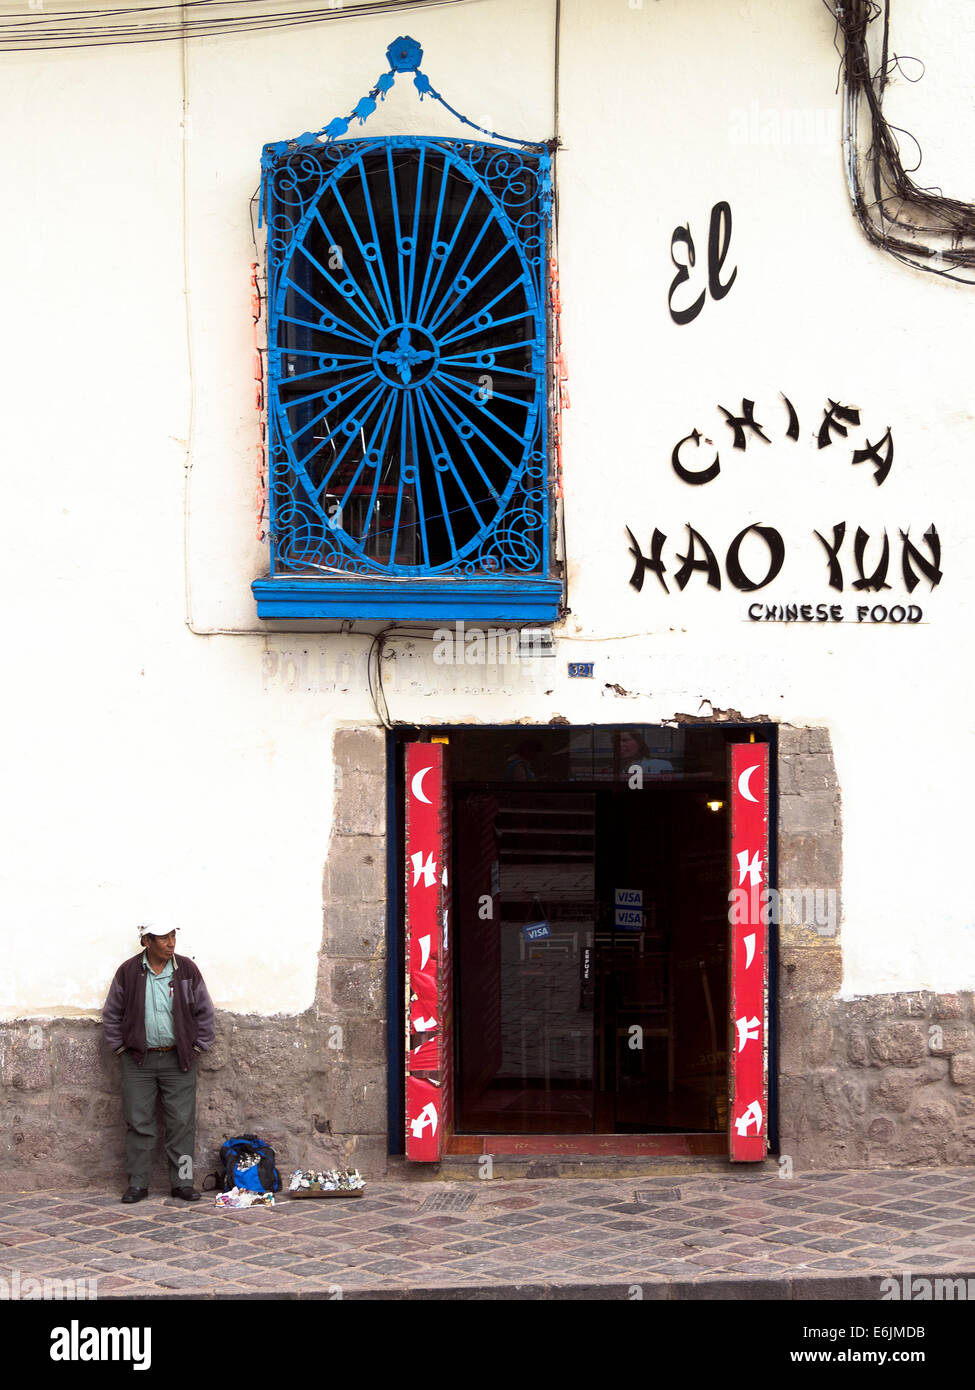 Homme debout près d'un restaurant chinois - Cusco, Pérou Banque D'Images